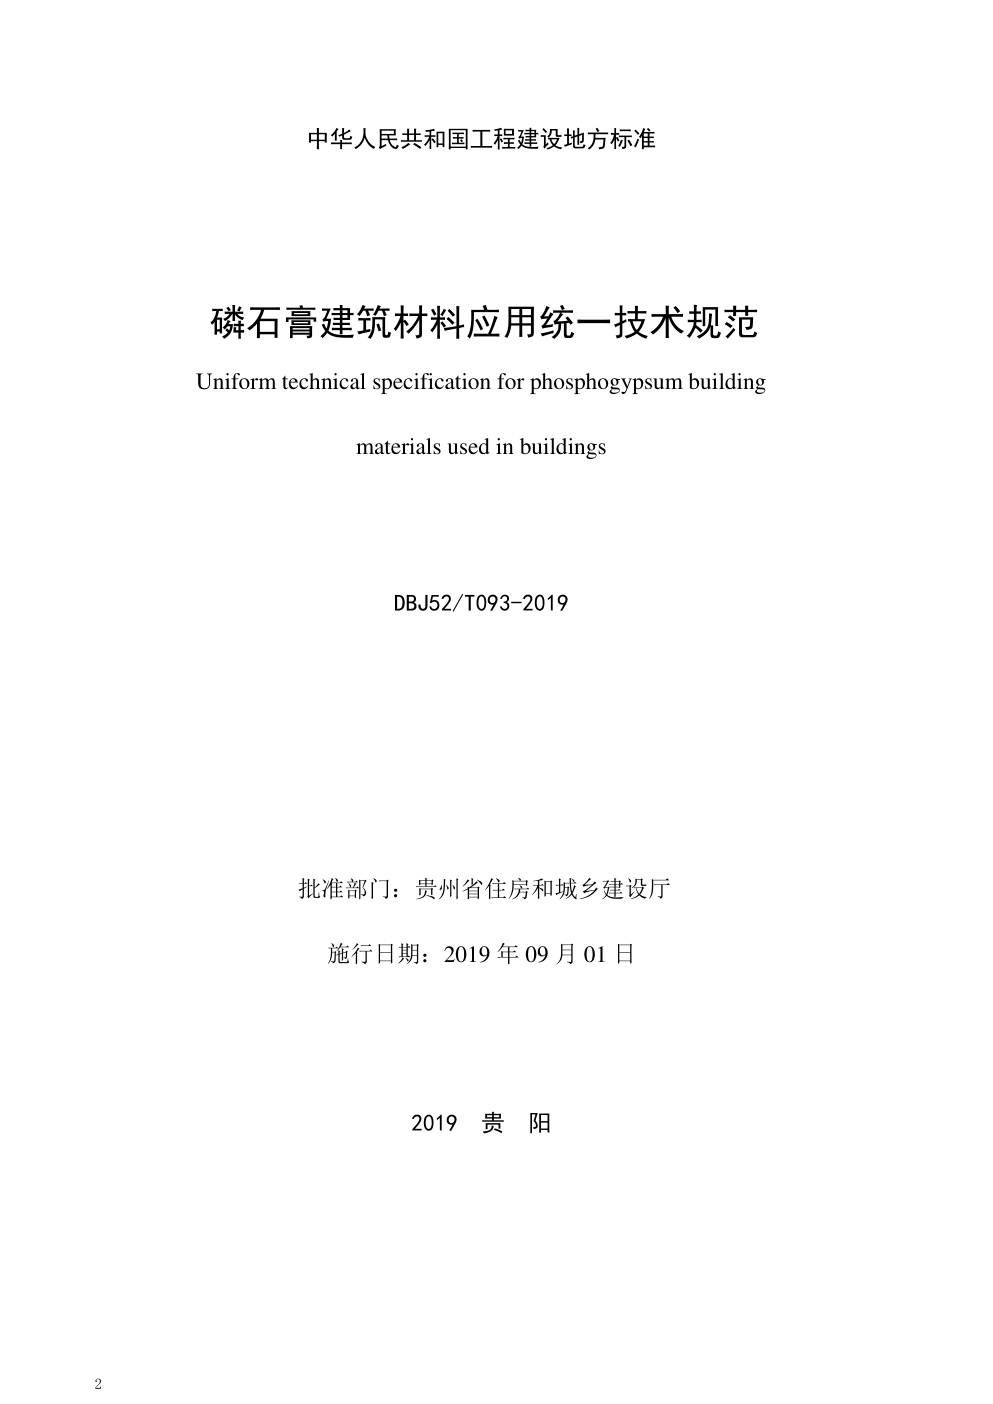 DBJ52 T093-2019 贵州 磷石膏建筑材料应用统一技术规范-1